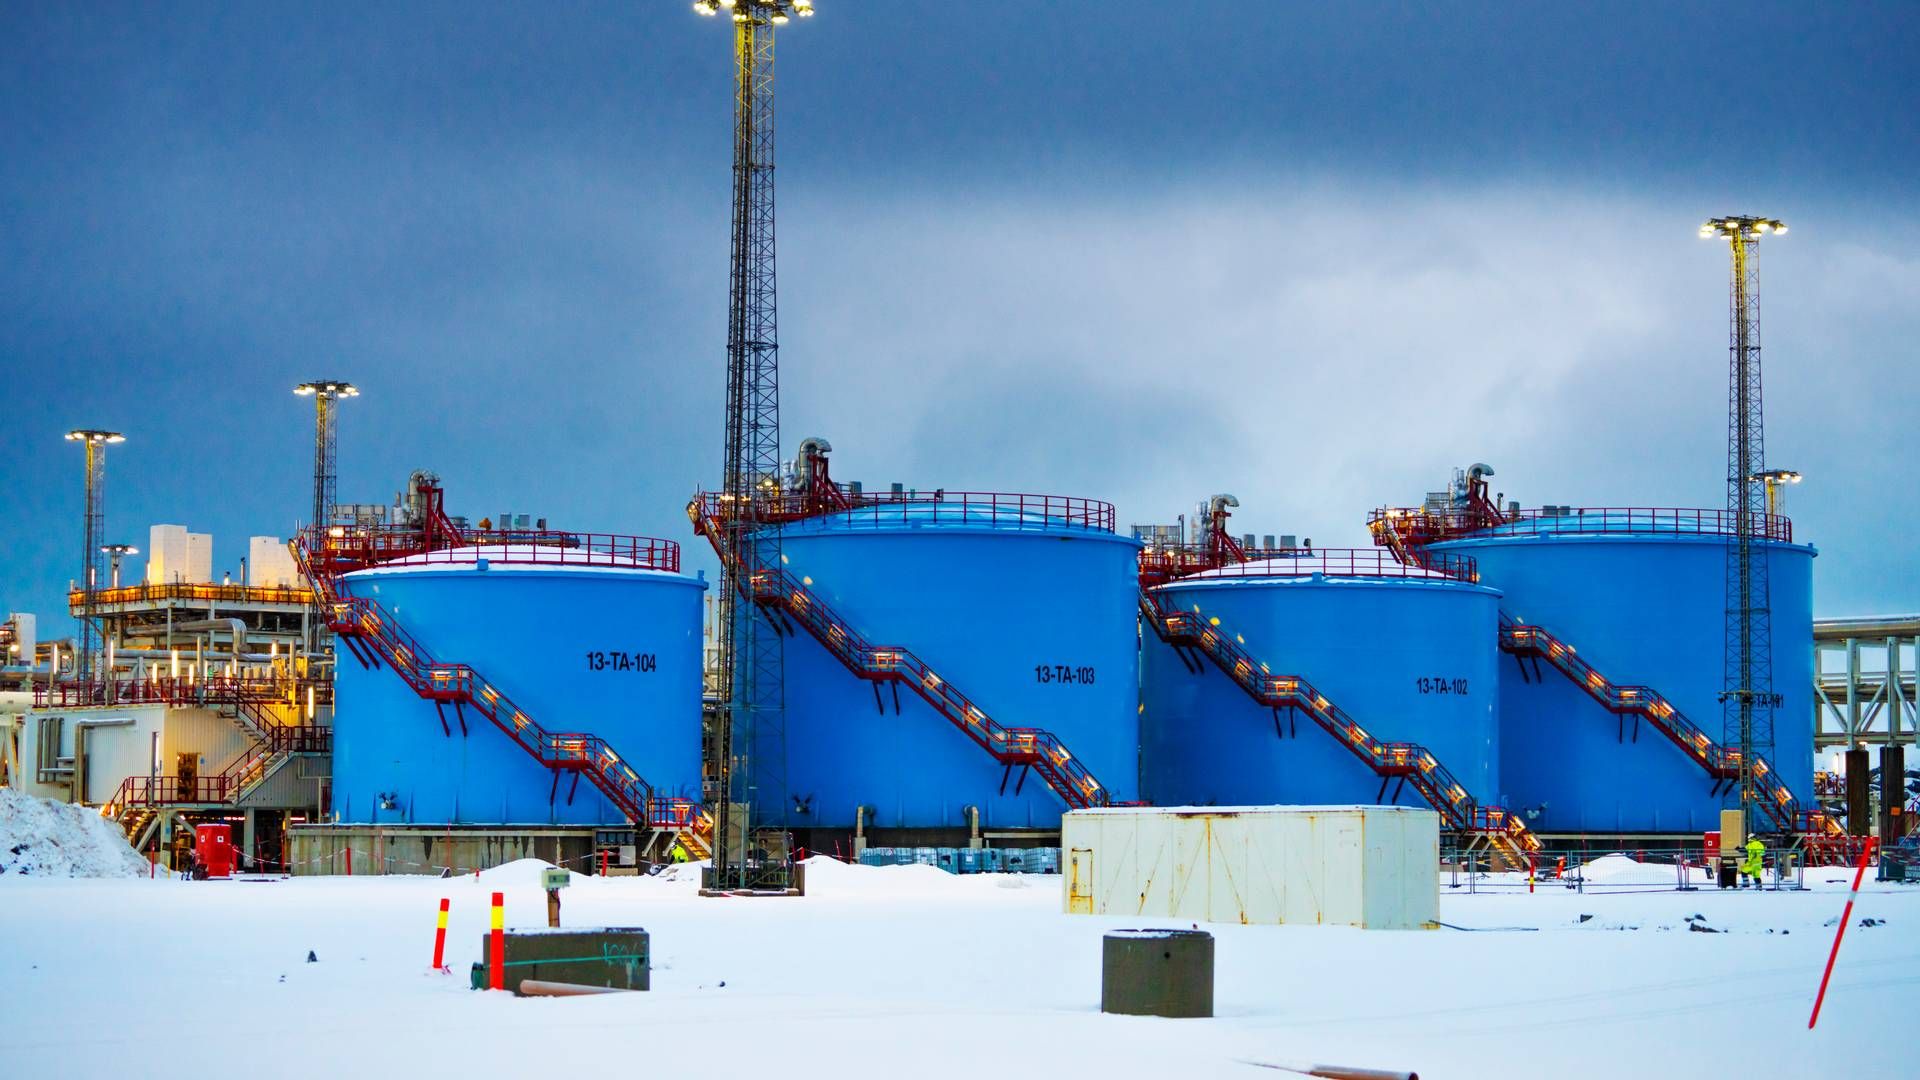 LNG INFRASTRUKTUR: Wintershall DEA er involvert i Snøhvit som er tilknyttet LNG-anlegget på Melkøya, men selskapet sier nei til å investere i LNG infrastruktur. | Foto: NTB/ Ole Berg-Rusten